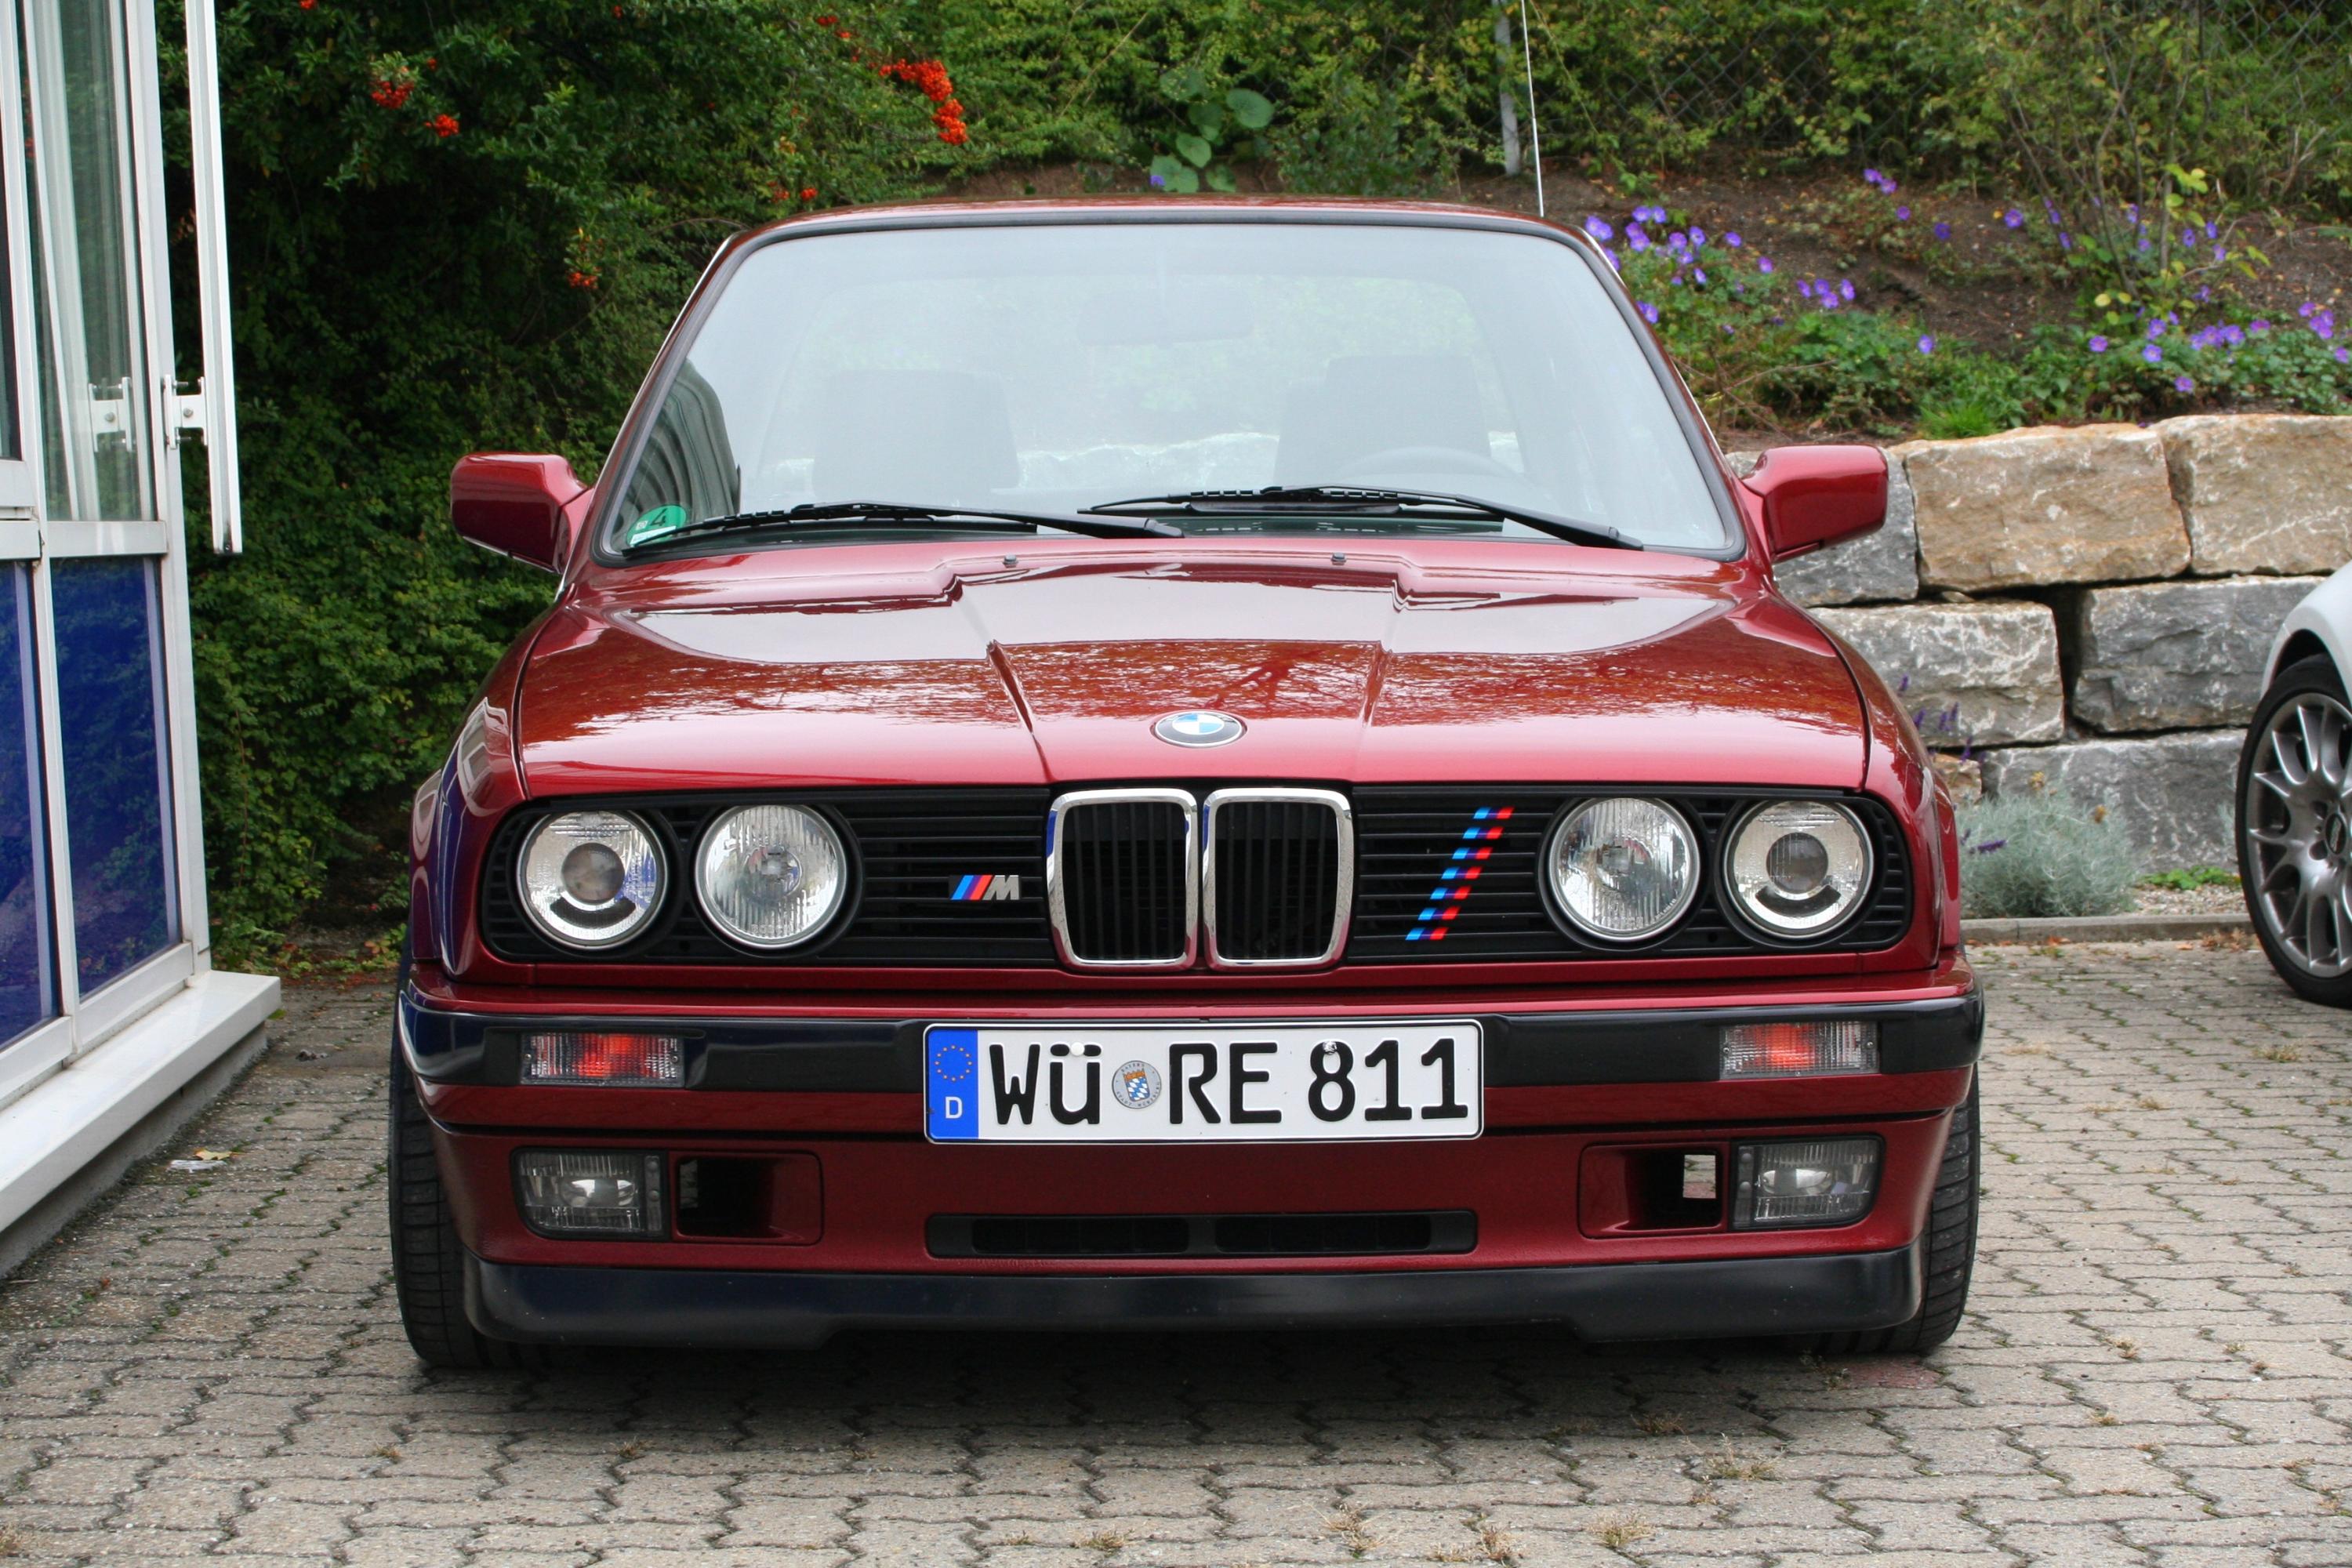 Aufkleber passend für BMW M Performance M Streifen Aufkleber Grill  Kühlergrill 22cm 12Stk Satz - BMW0049 - FÜR BMW